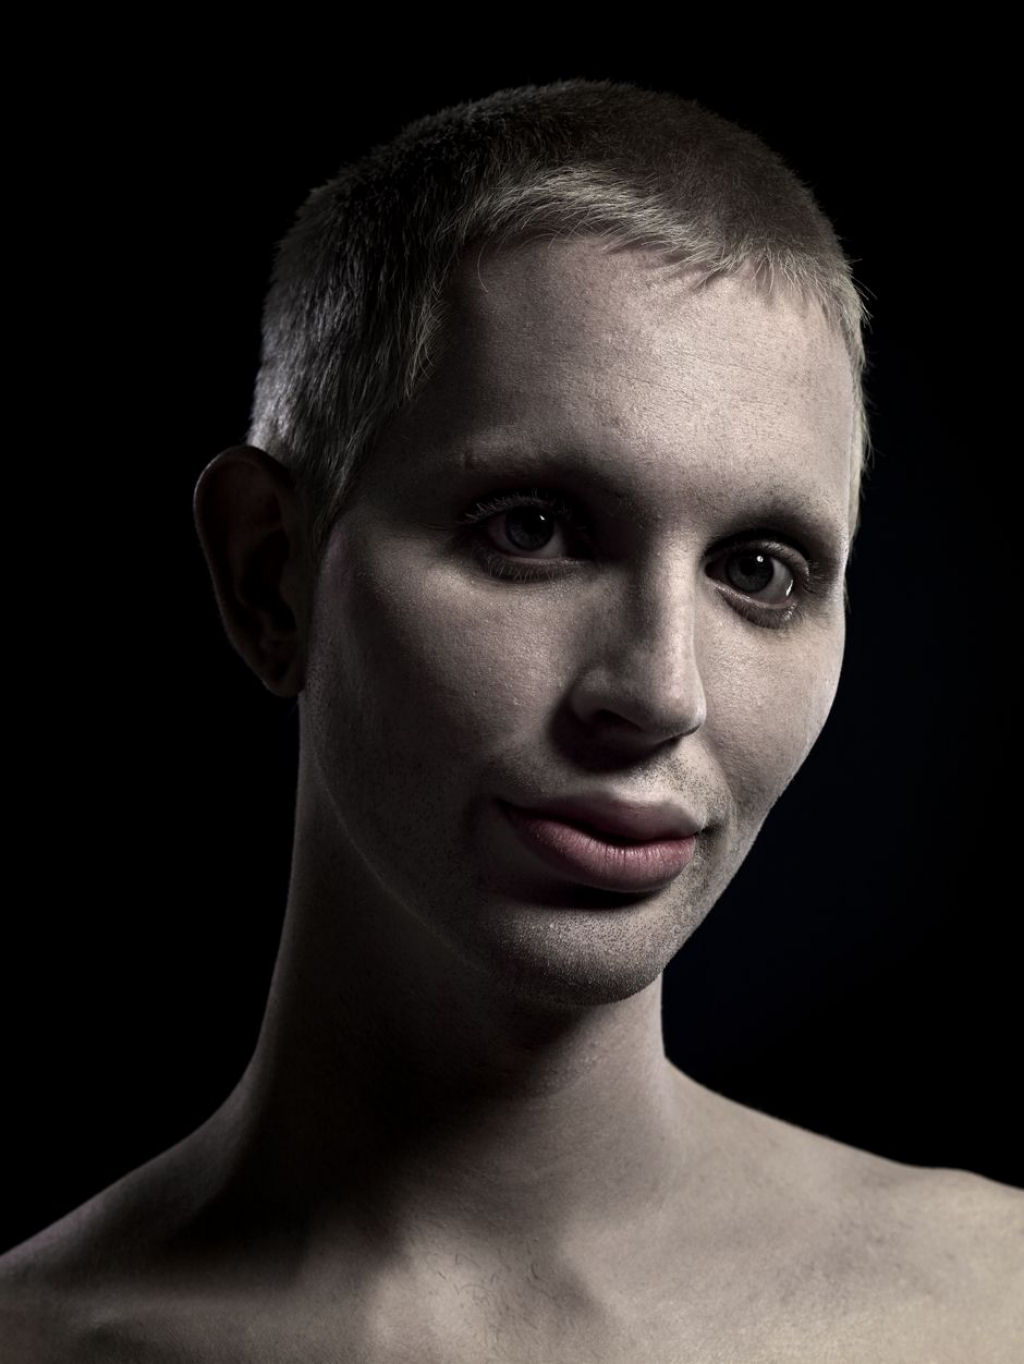 Plstica beleza: retratos de pessoas com cirurgia esttica extrema 10